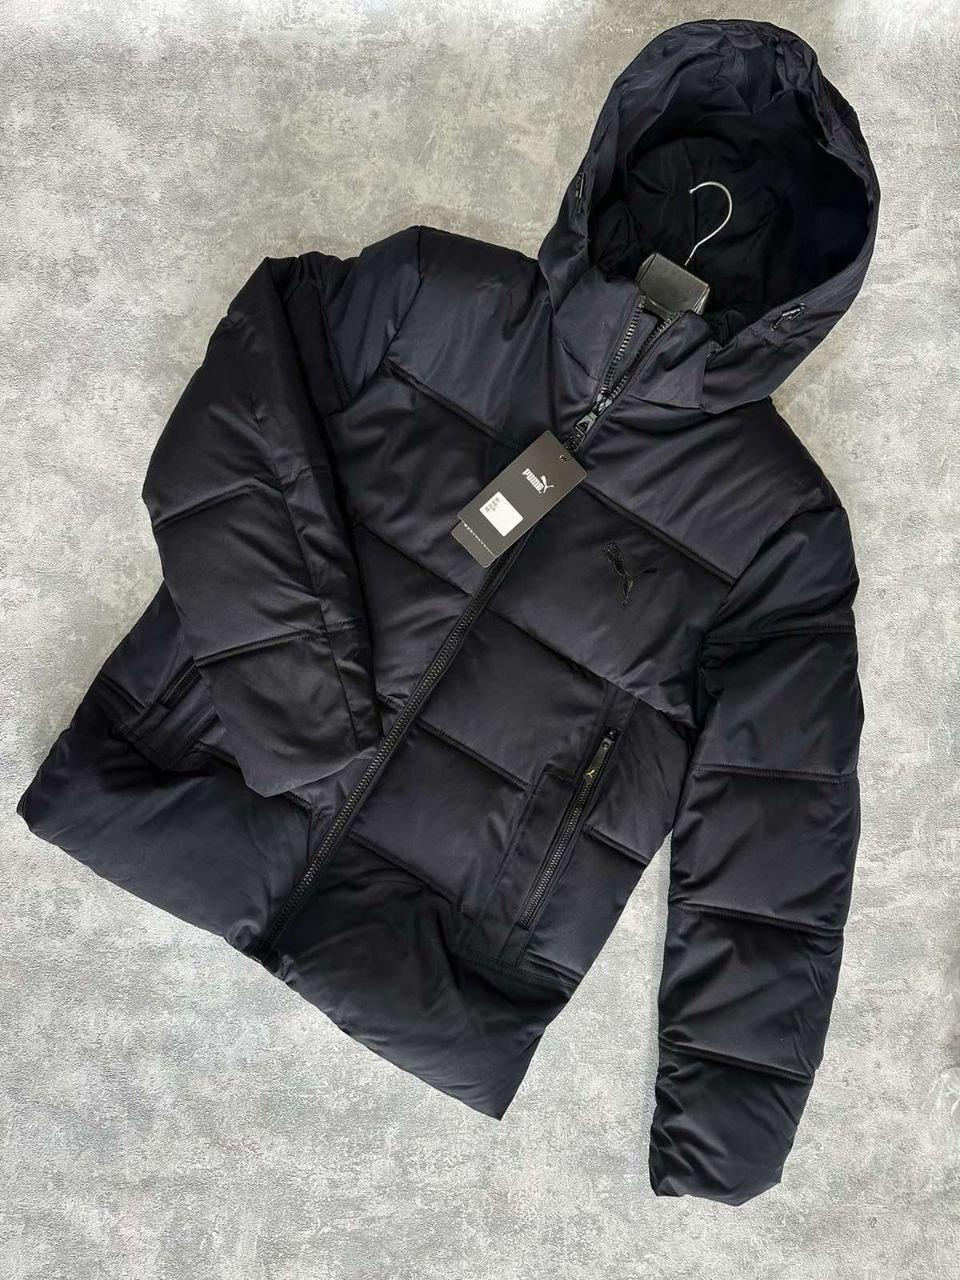 Мужская Зимняя Куртка Puma Черная До -20